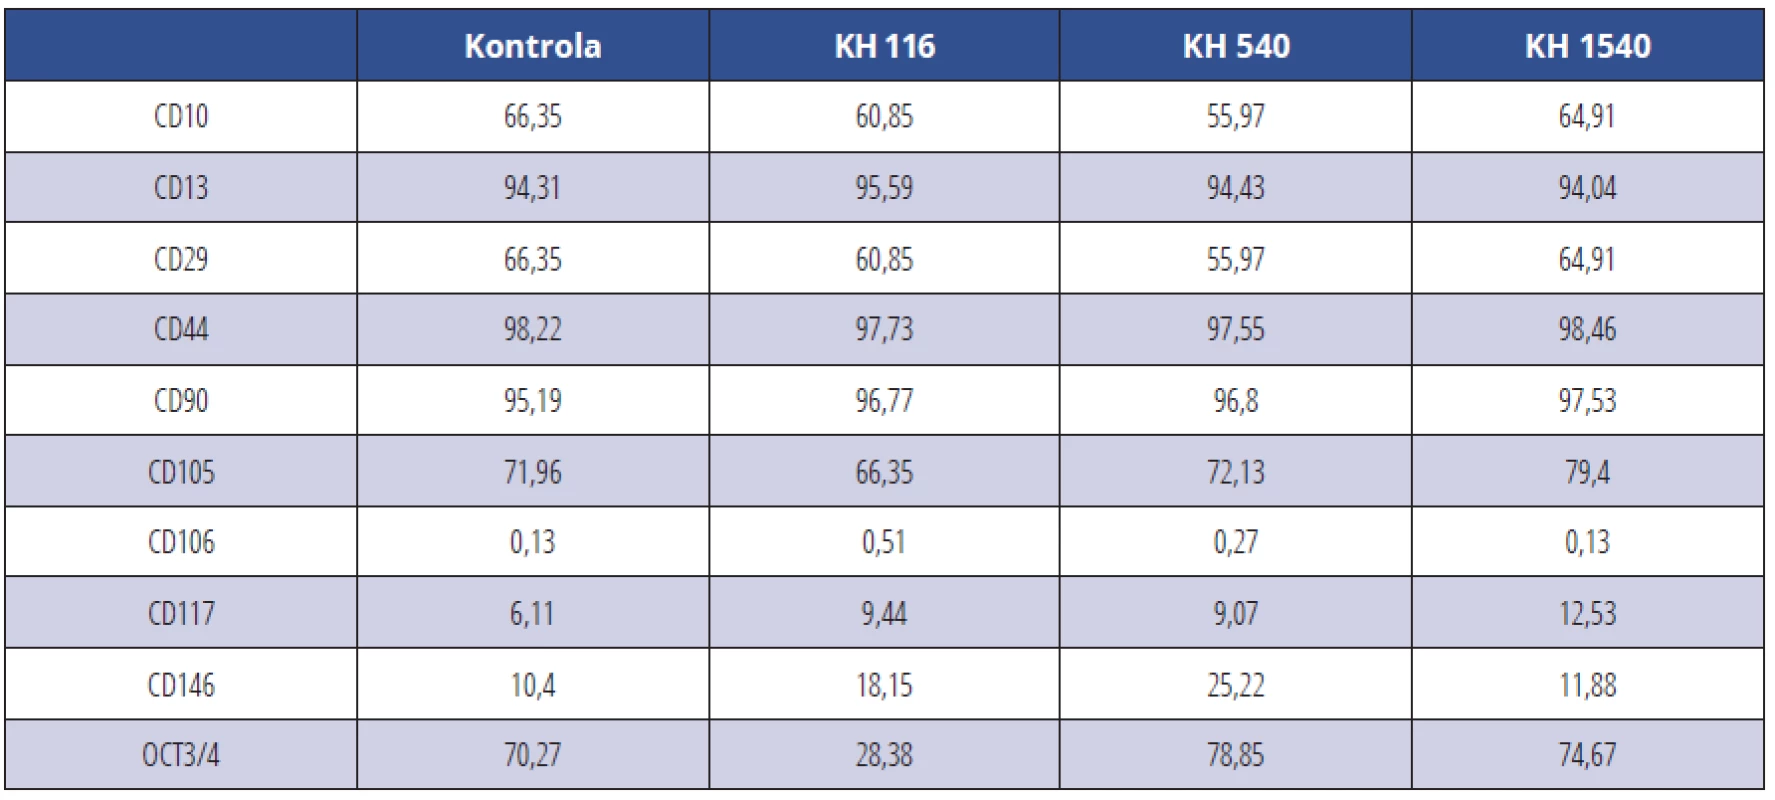 CD pozitivní KBZD v procentech v rámci populace linie 1; KBZD kultivovány v kontrolním médiu
(Kontrola), médiu 1 (KH 116), médiu 2 (KH 540) a médiu 3 (KH 1500)<br>
Tab. 1 Percentage of CD positive DPSCs within the population of the DPSC line 1; DPSCs were cultivated in control medium (Control), medium 1 (HA 116), medium 2 (HA 540) and medium 3 (HA 1500)